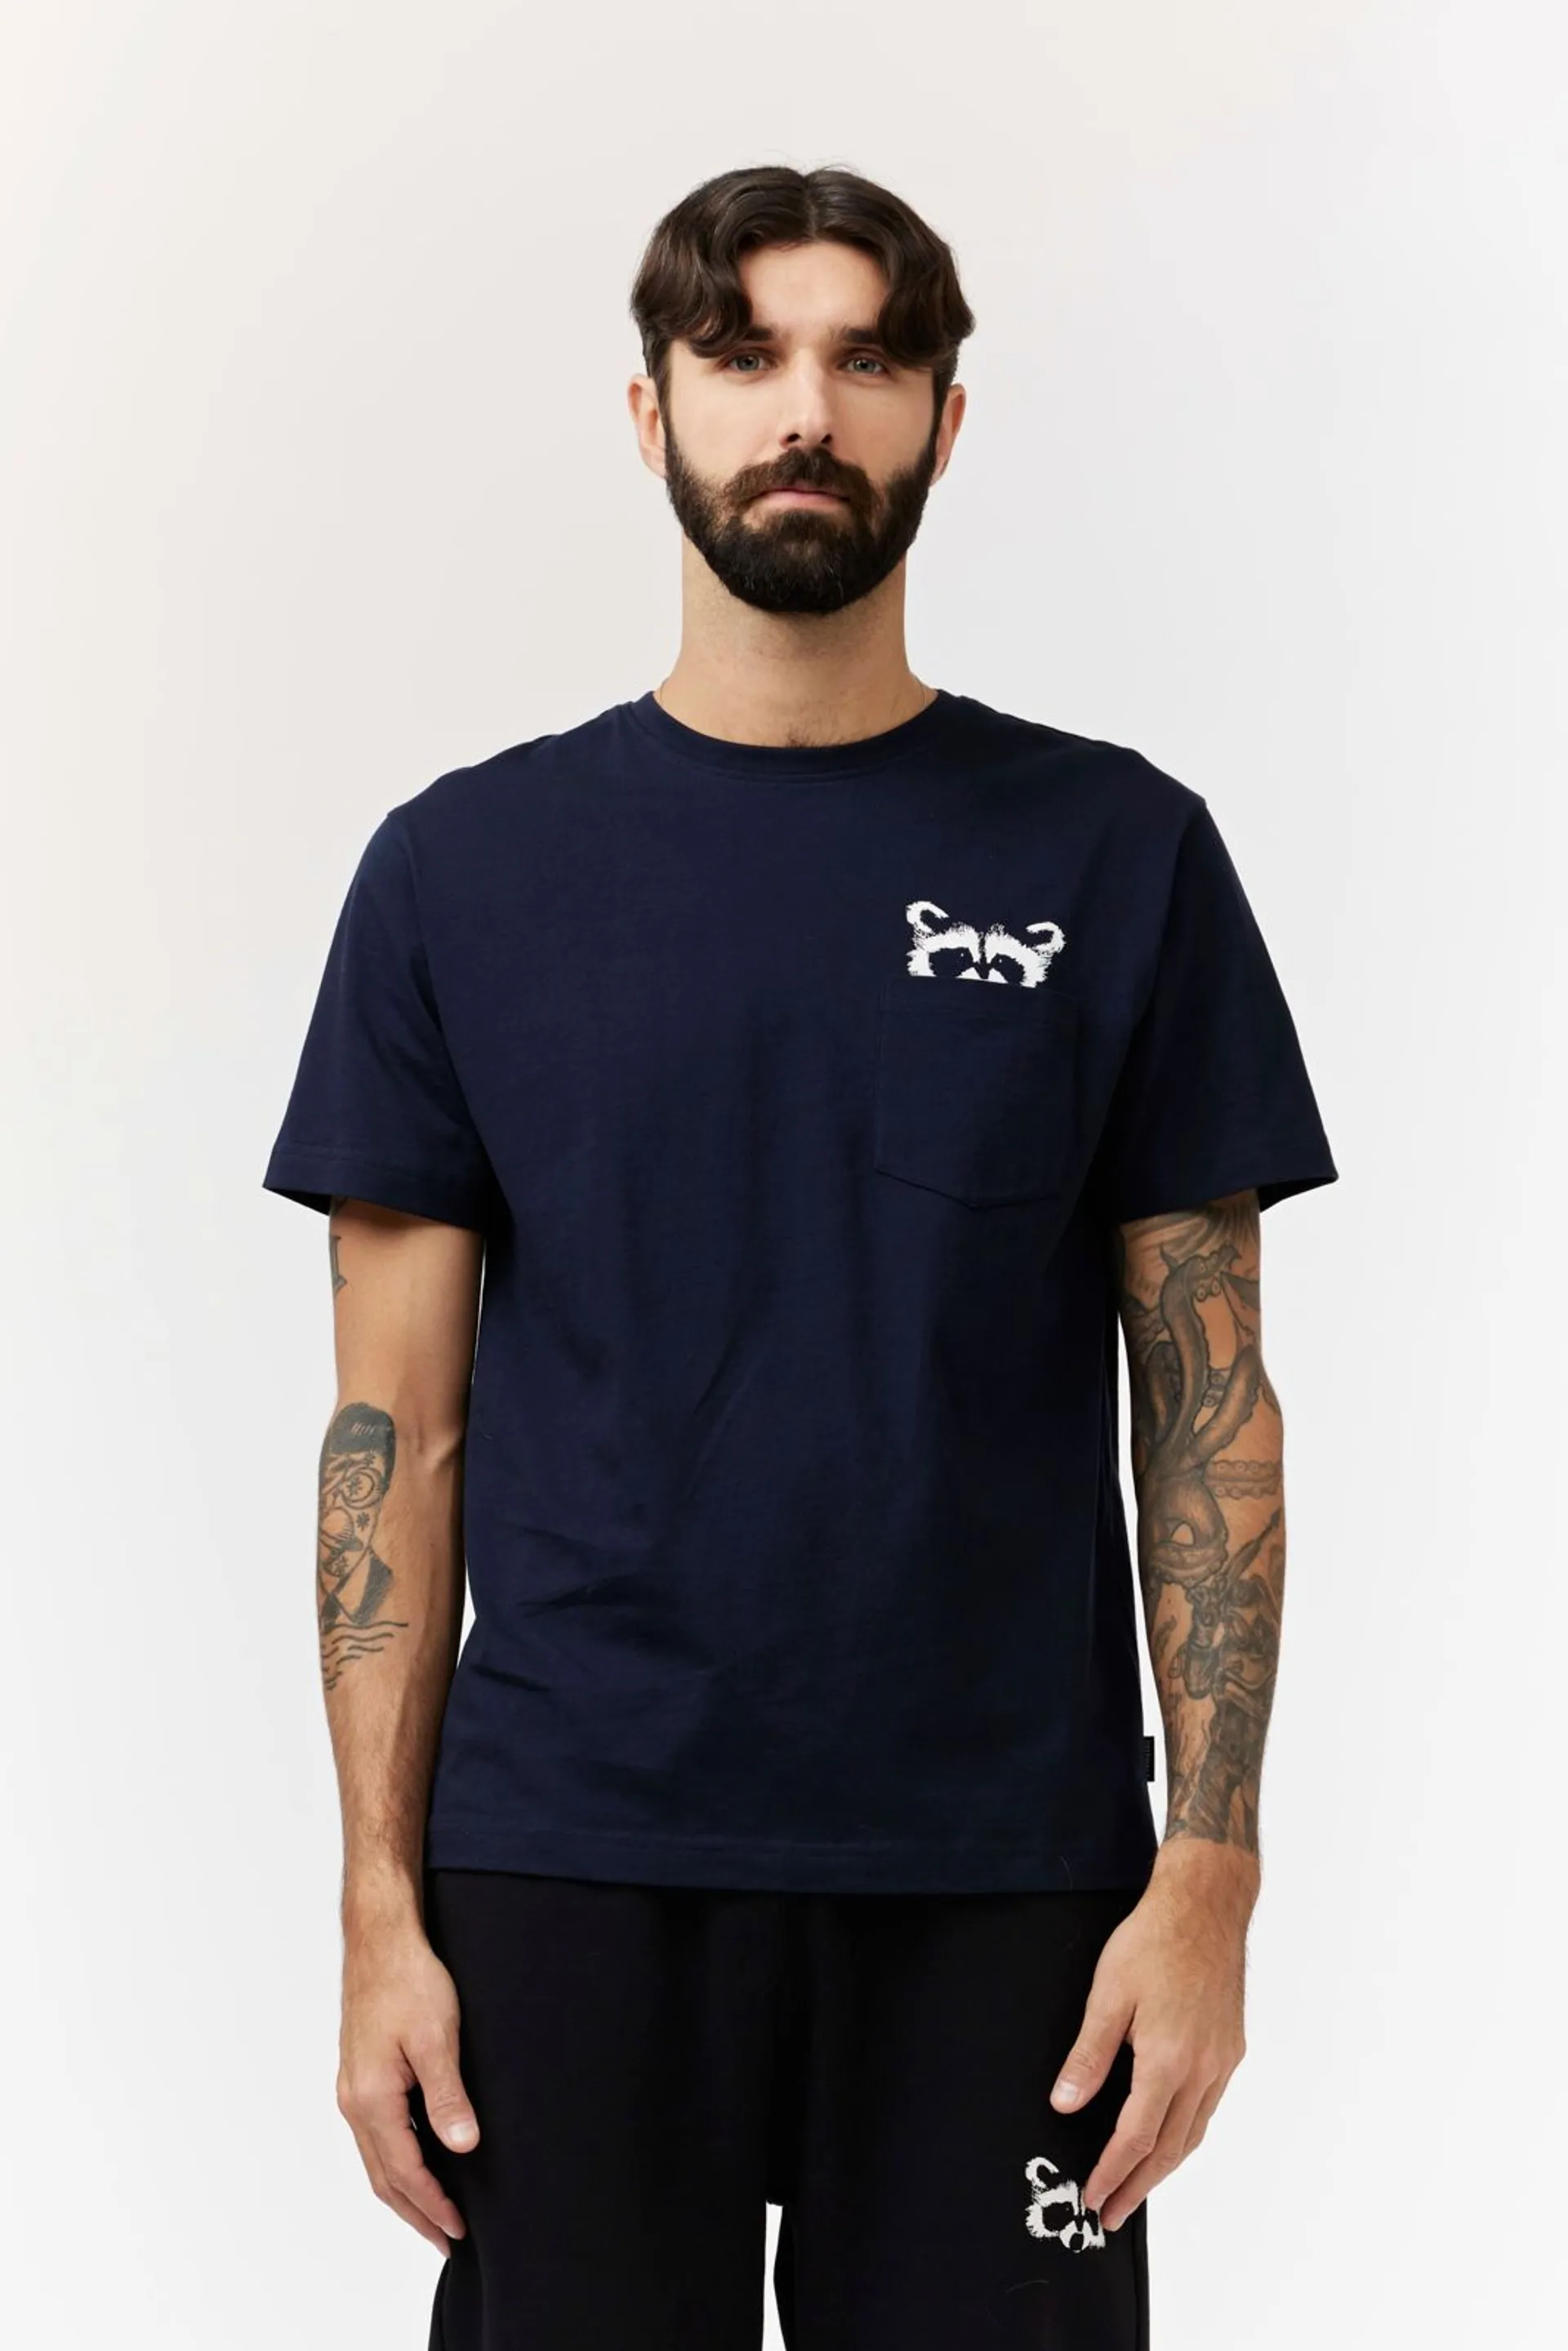 Finlayson Arkismi miesten T-paita taskulla Pesue - Dark blue - 2